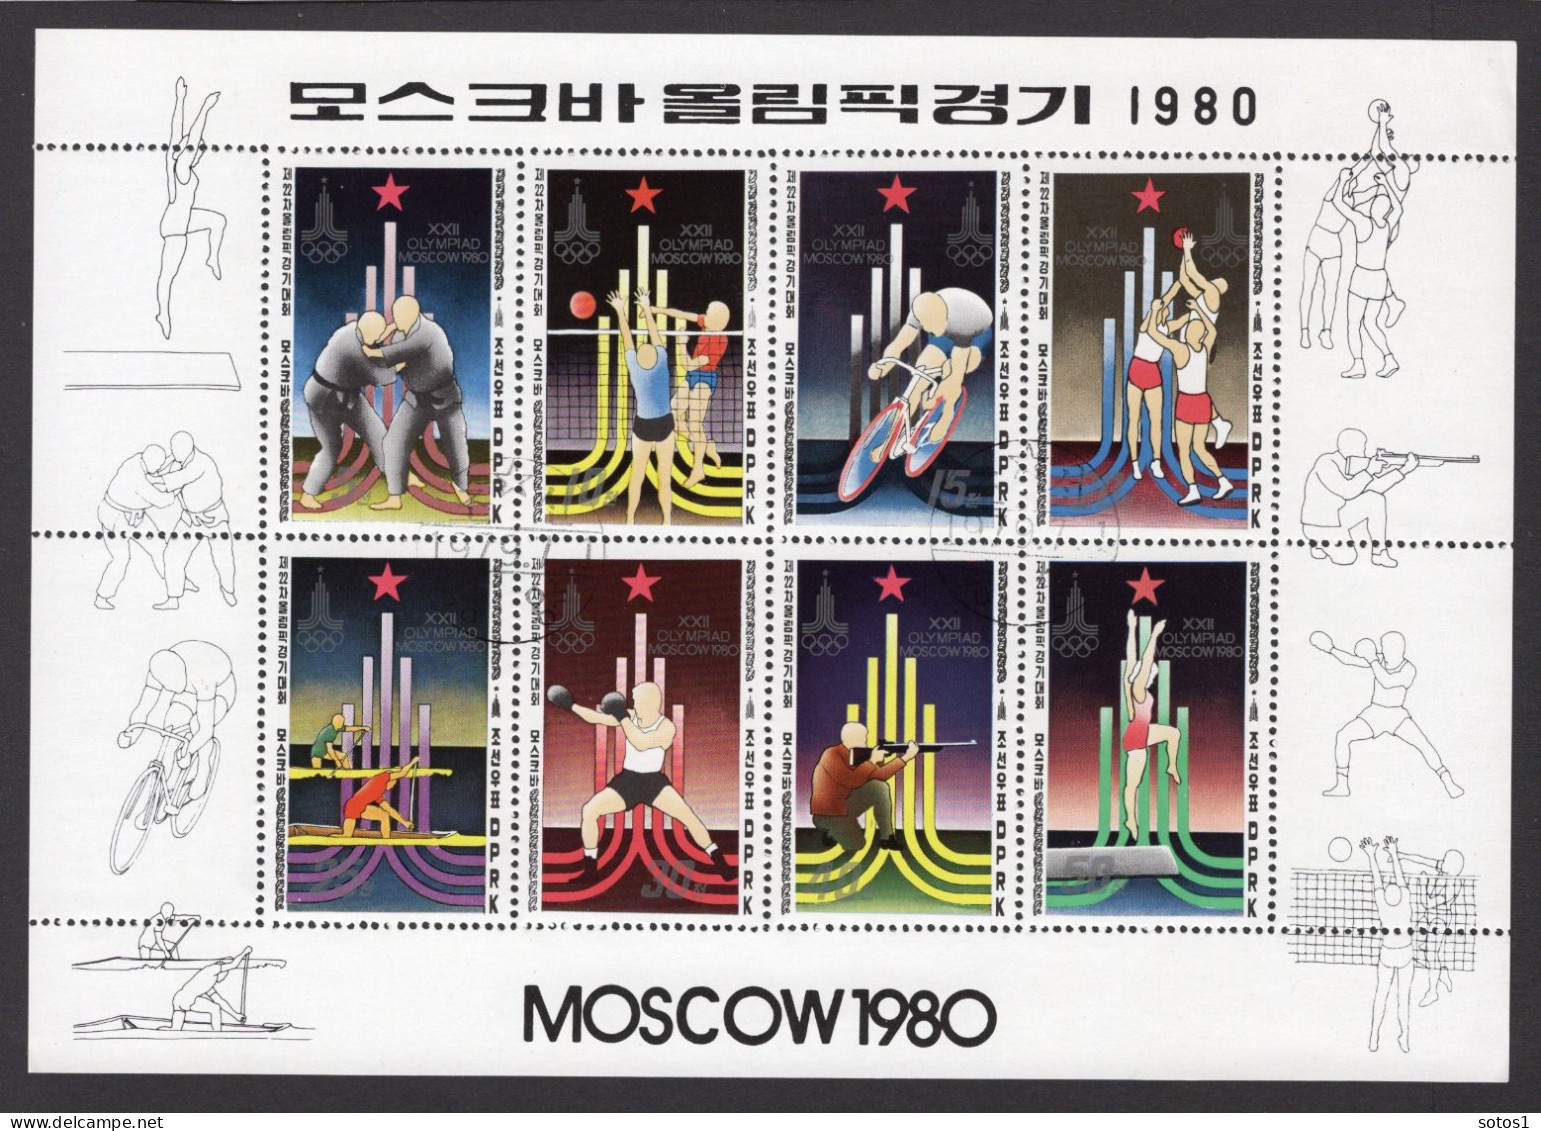 KOREA-NOORD Mi. 1881-1888° Gestempeld 1979 - Corée Du Nord